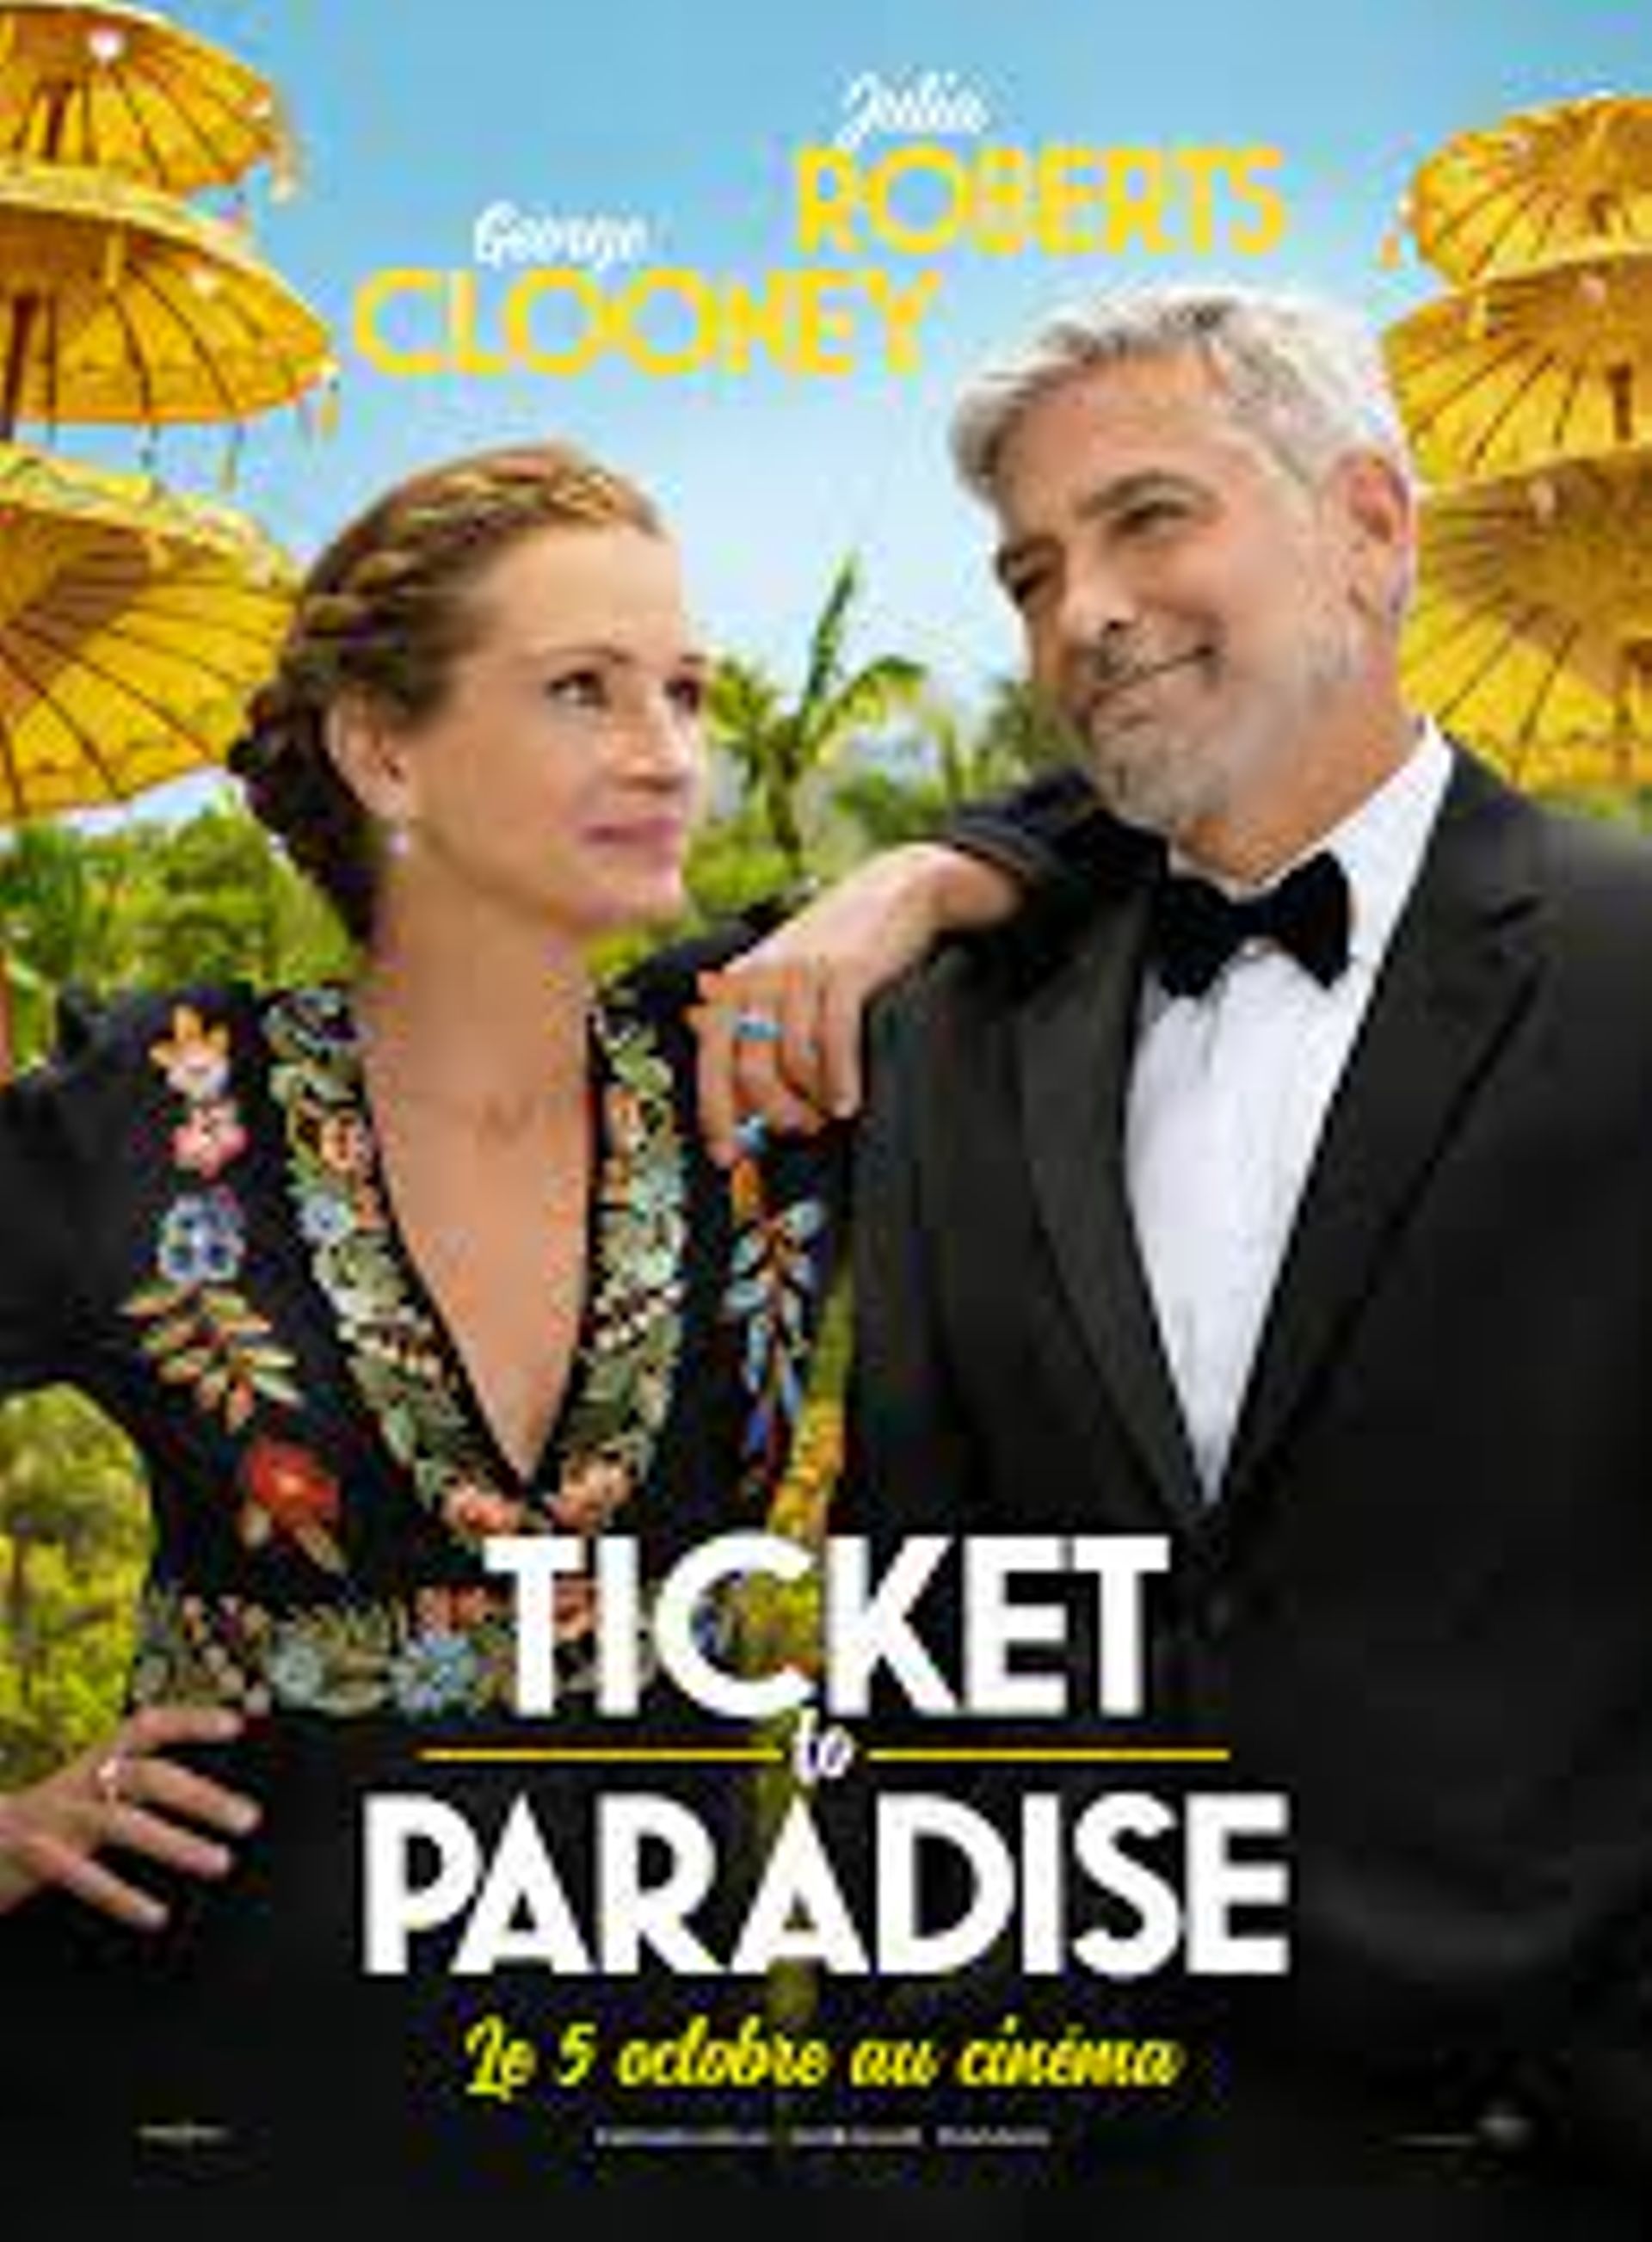 Affiche de "Ticket to paradise"